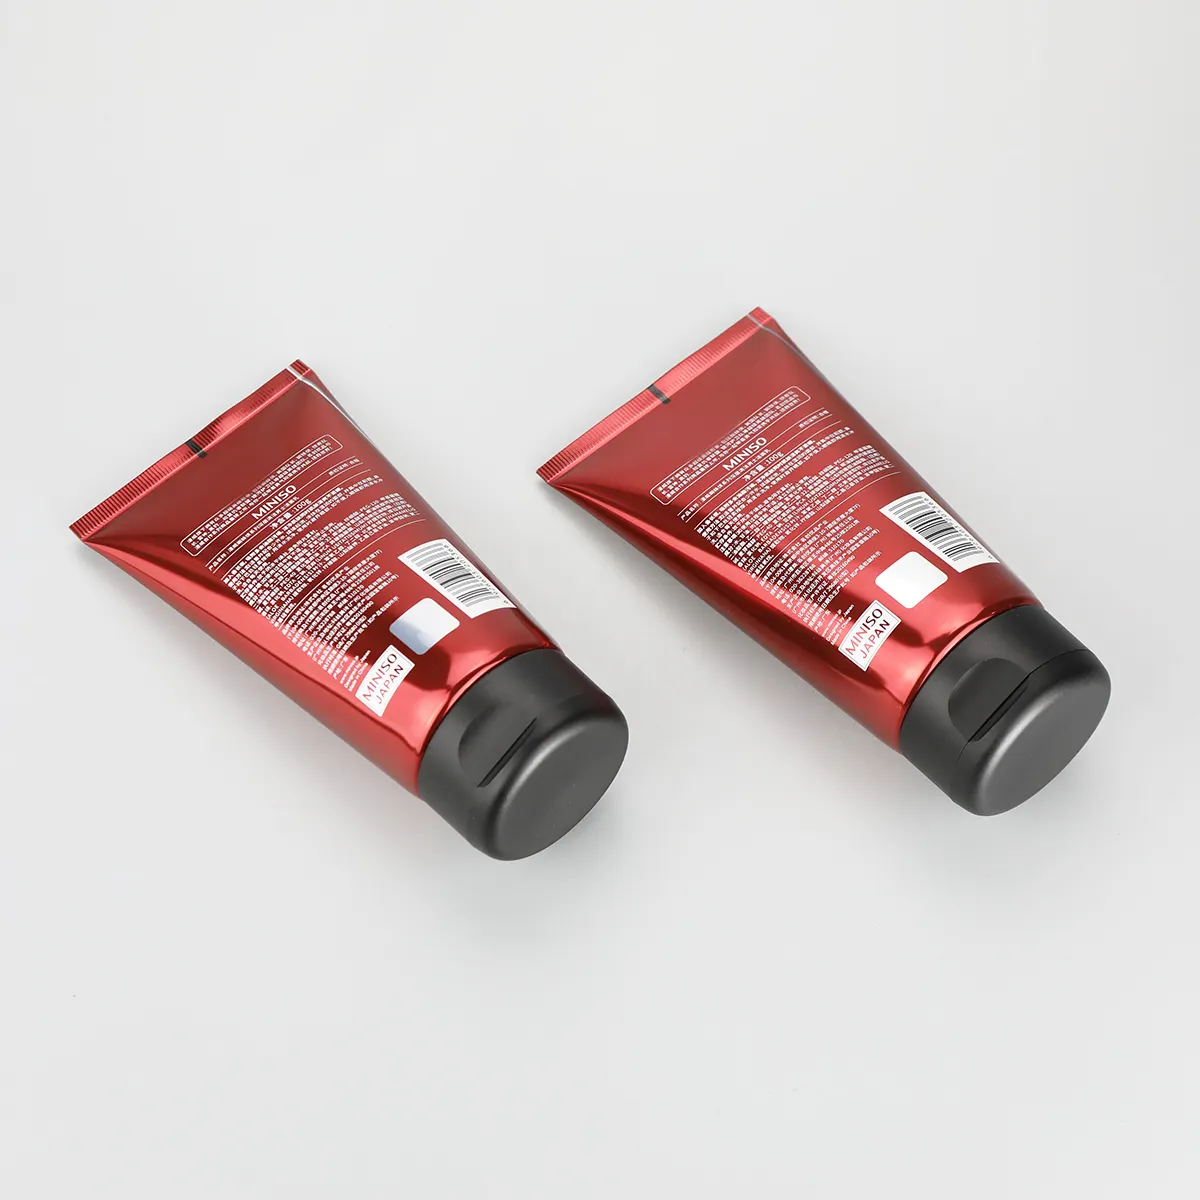 Tubo de embalagem para rosto, tubo de alumínio laminado de 5 camadas para homem, de plástico vermelho, alto brilhante d50mm 100g com tampa superior preta